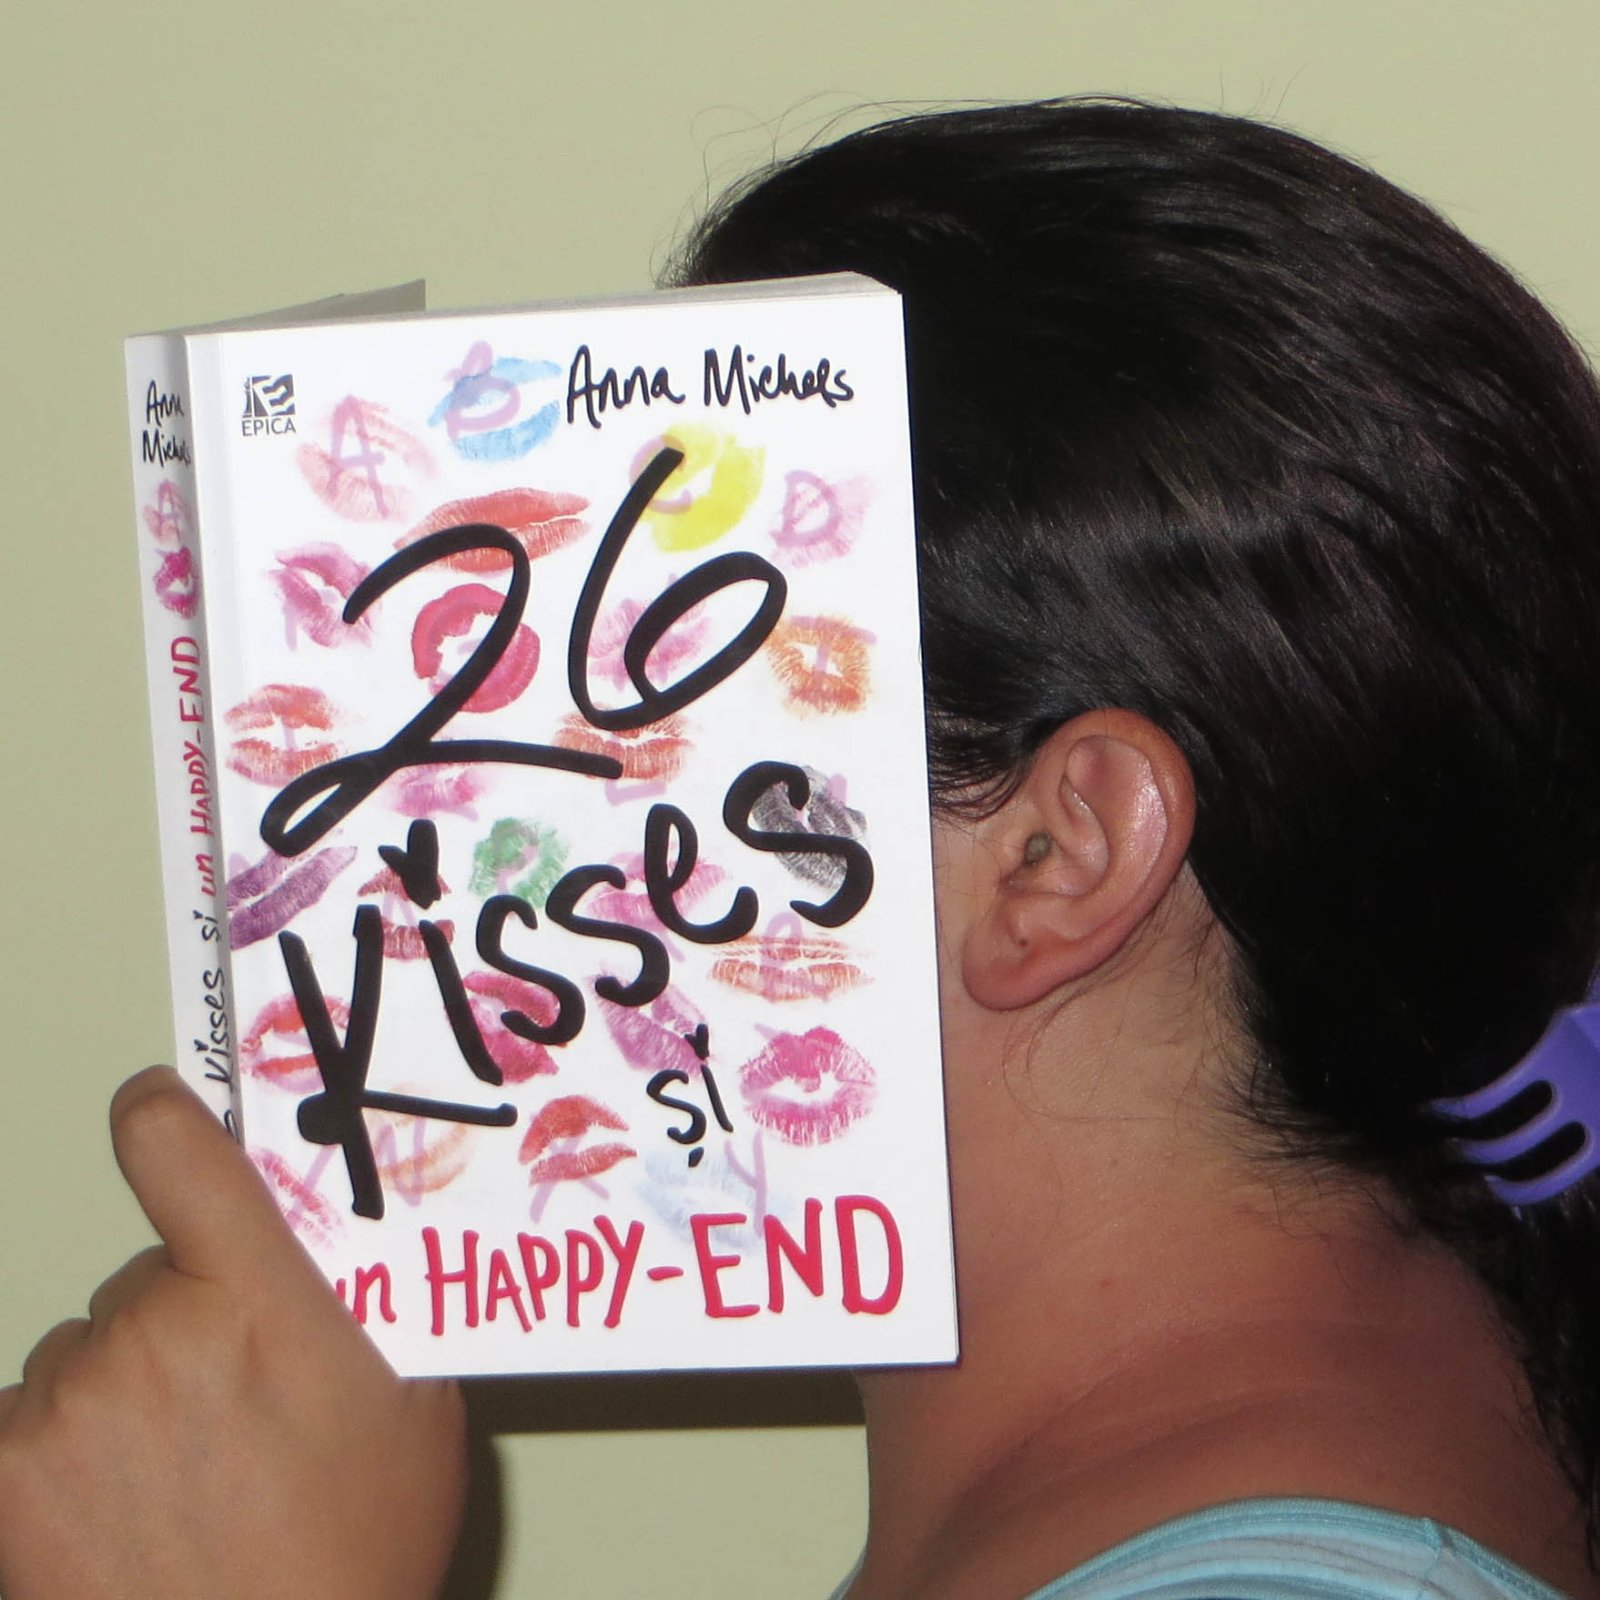 Anna Michels - 26 kisses şi un HAPPY-END